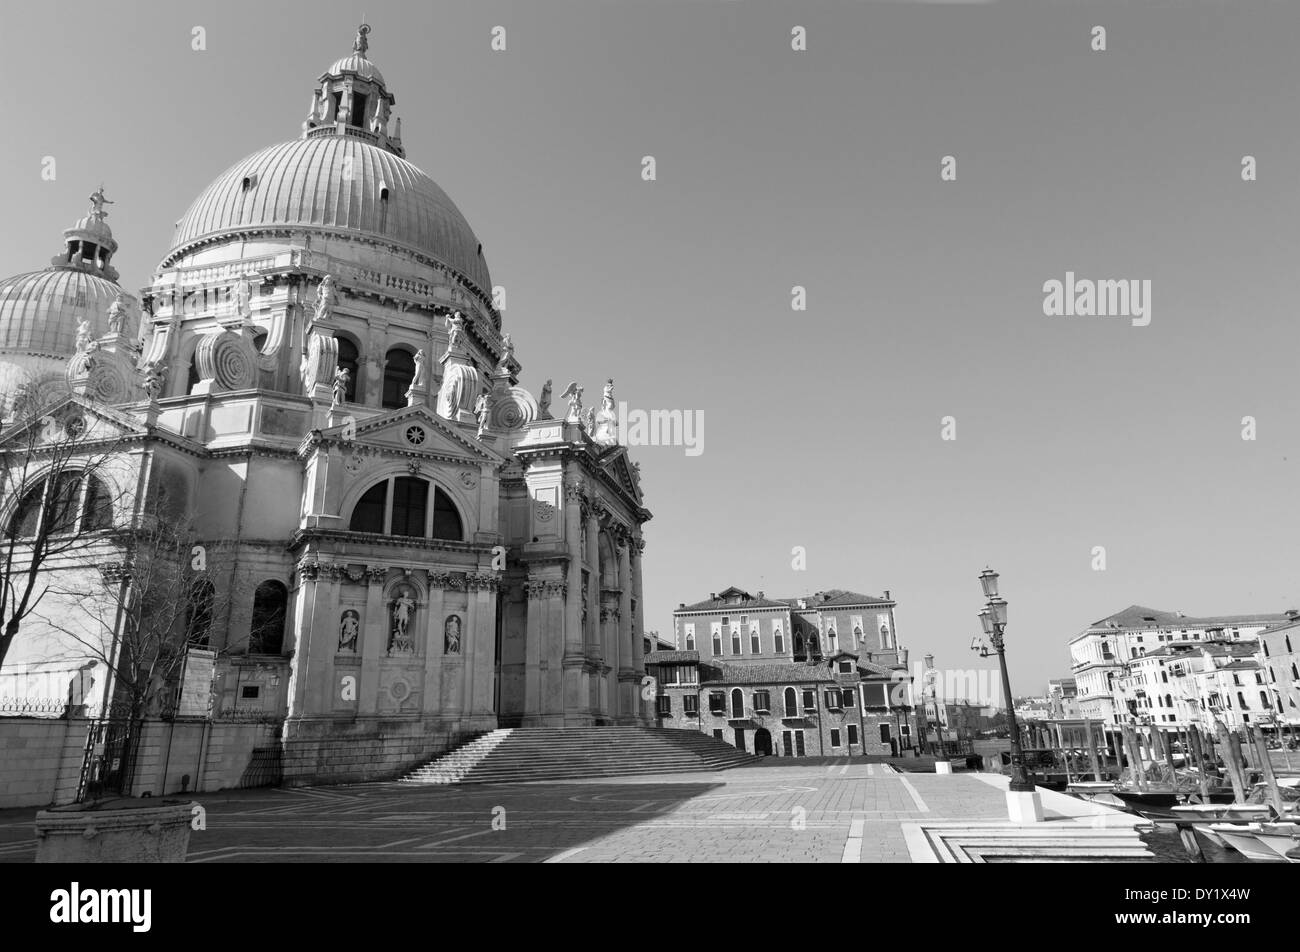 Venice - Santa Maria della Salute church and waterfront of Canal Grande Stock Photo